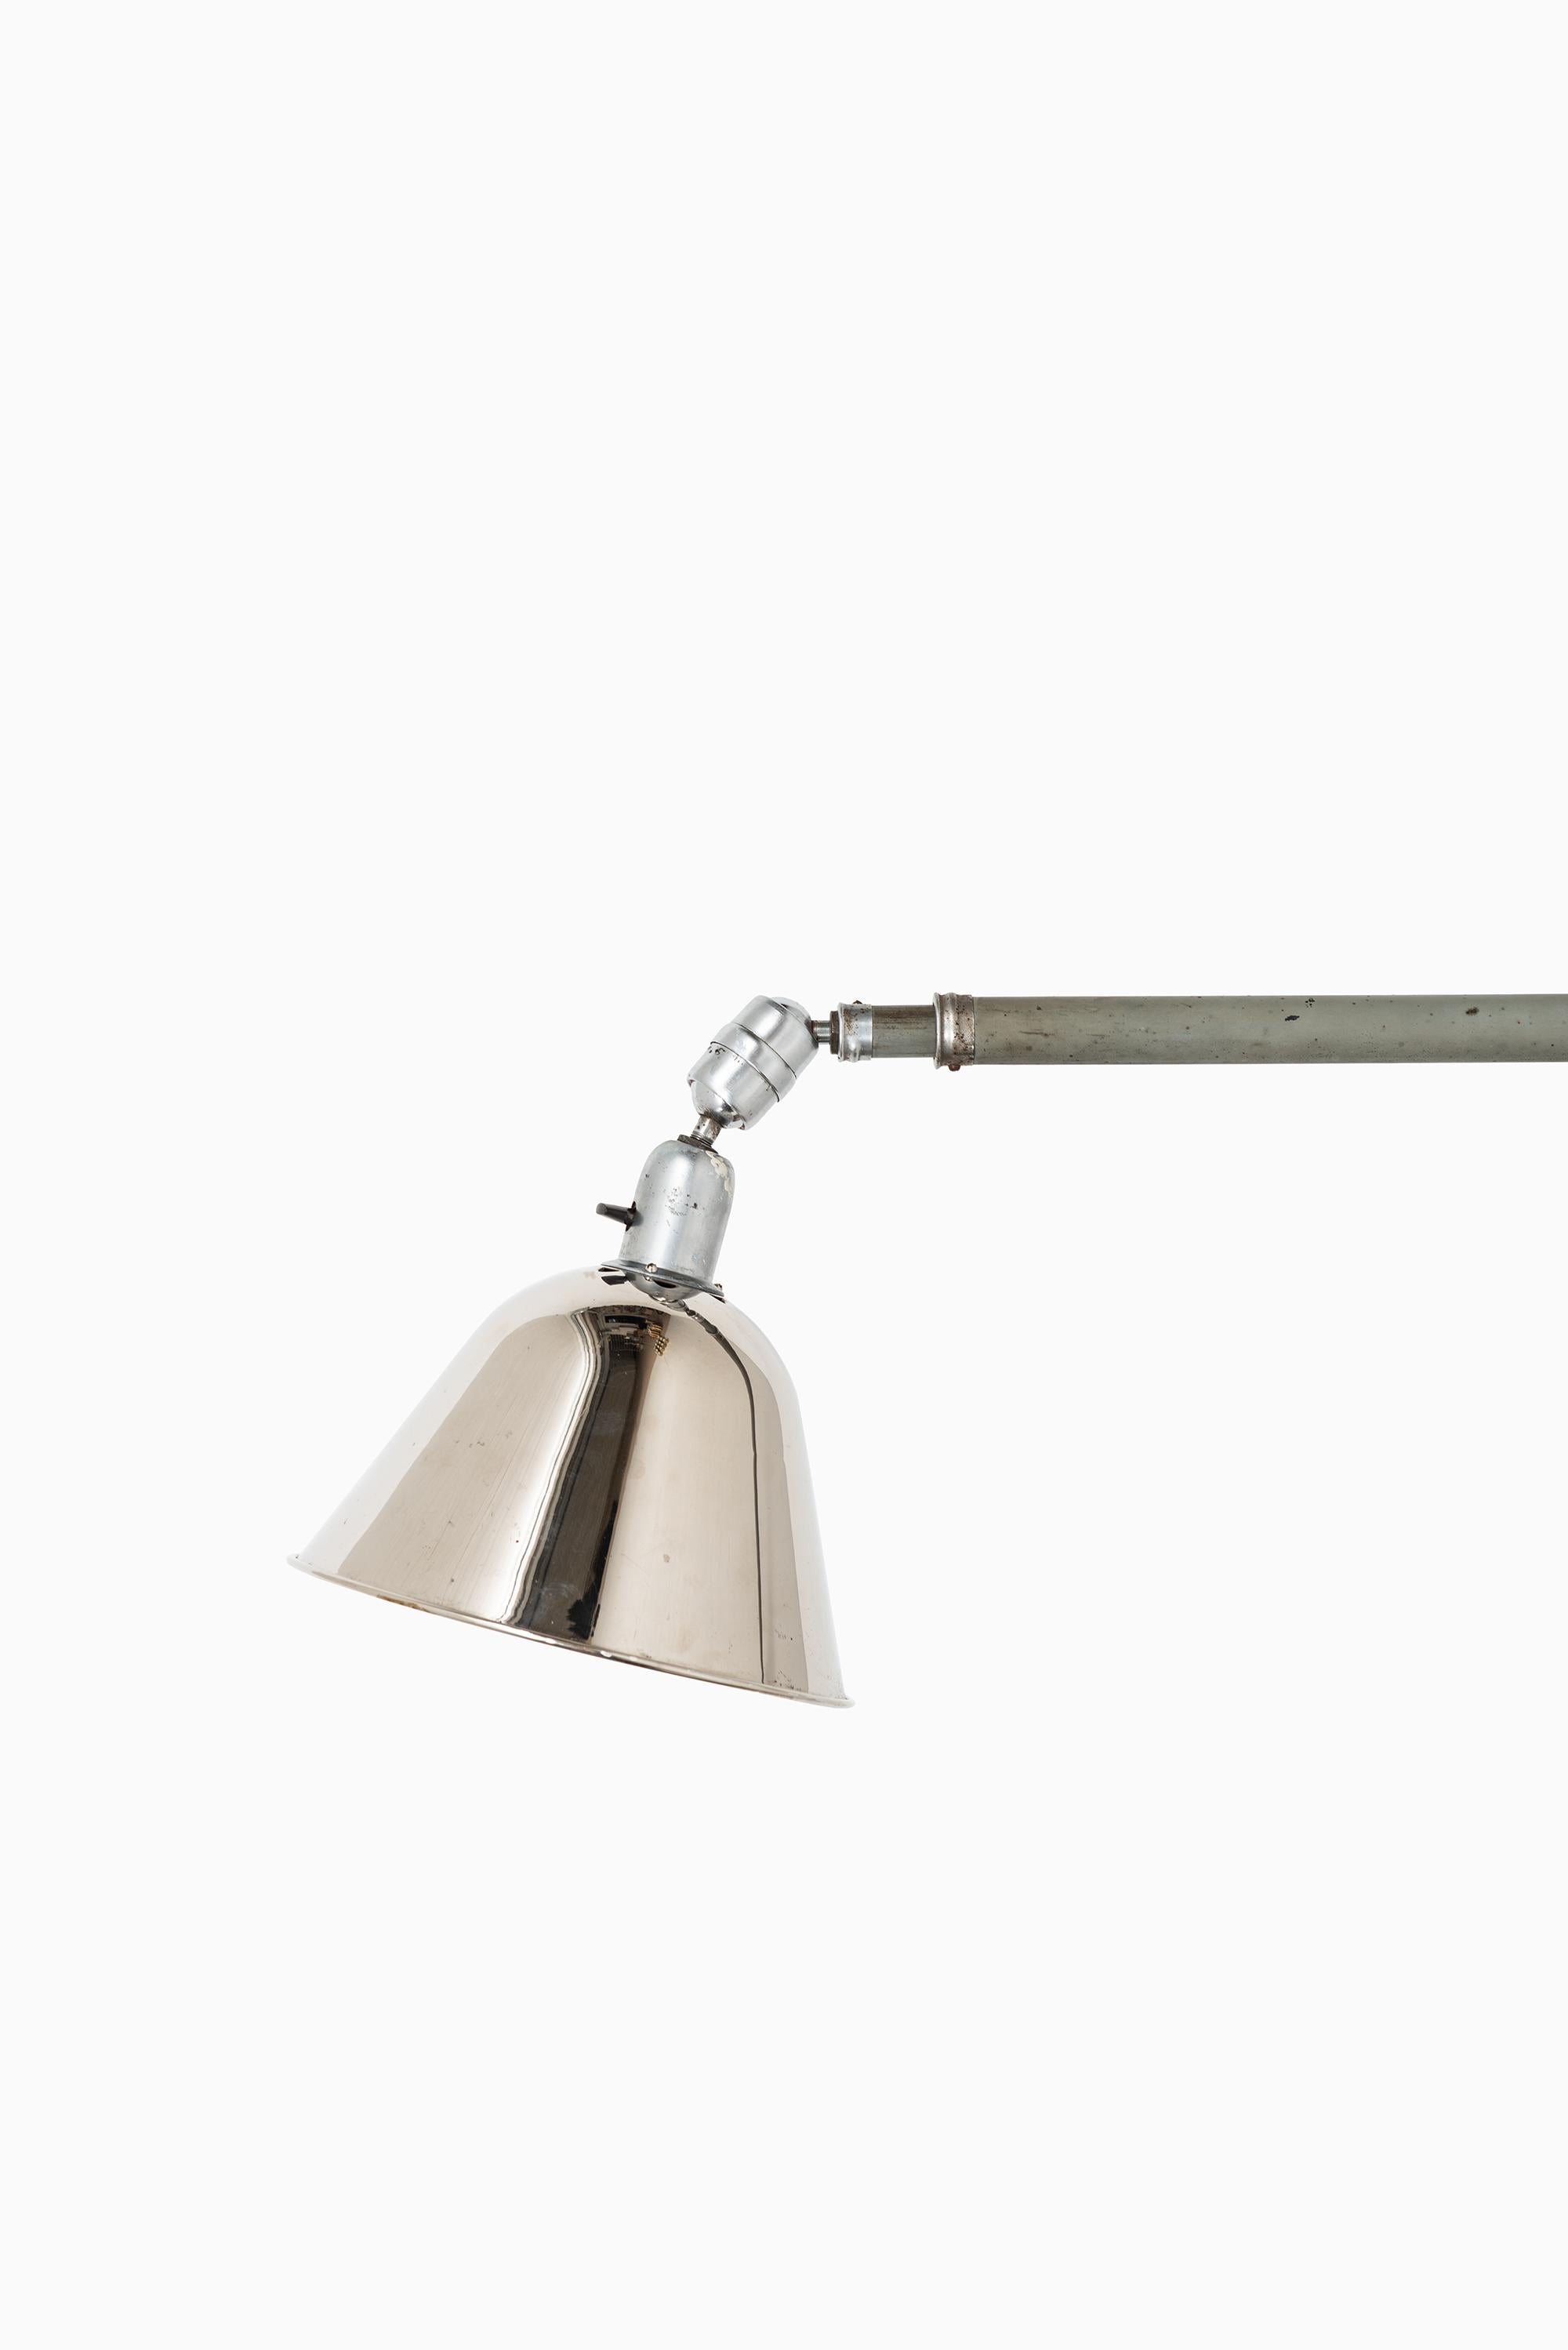 Extending triplex wall / ceiling lamp designed by Johan Petter Johansson. Produced by Triplex Fabriken in Sweden.